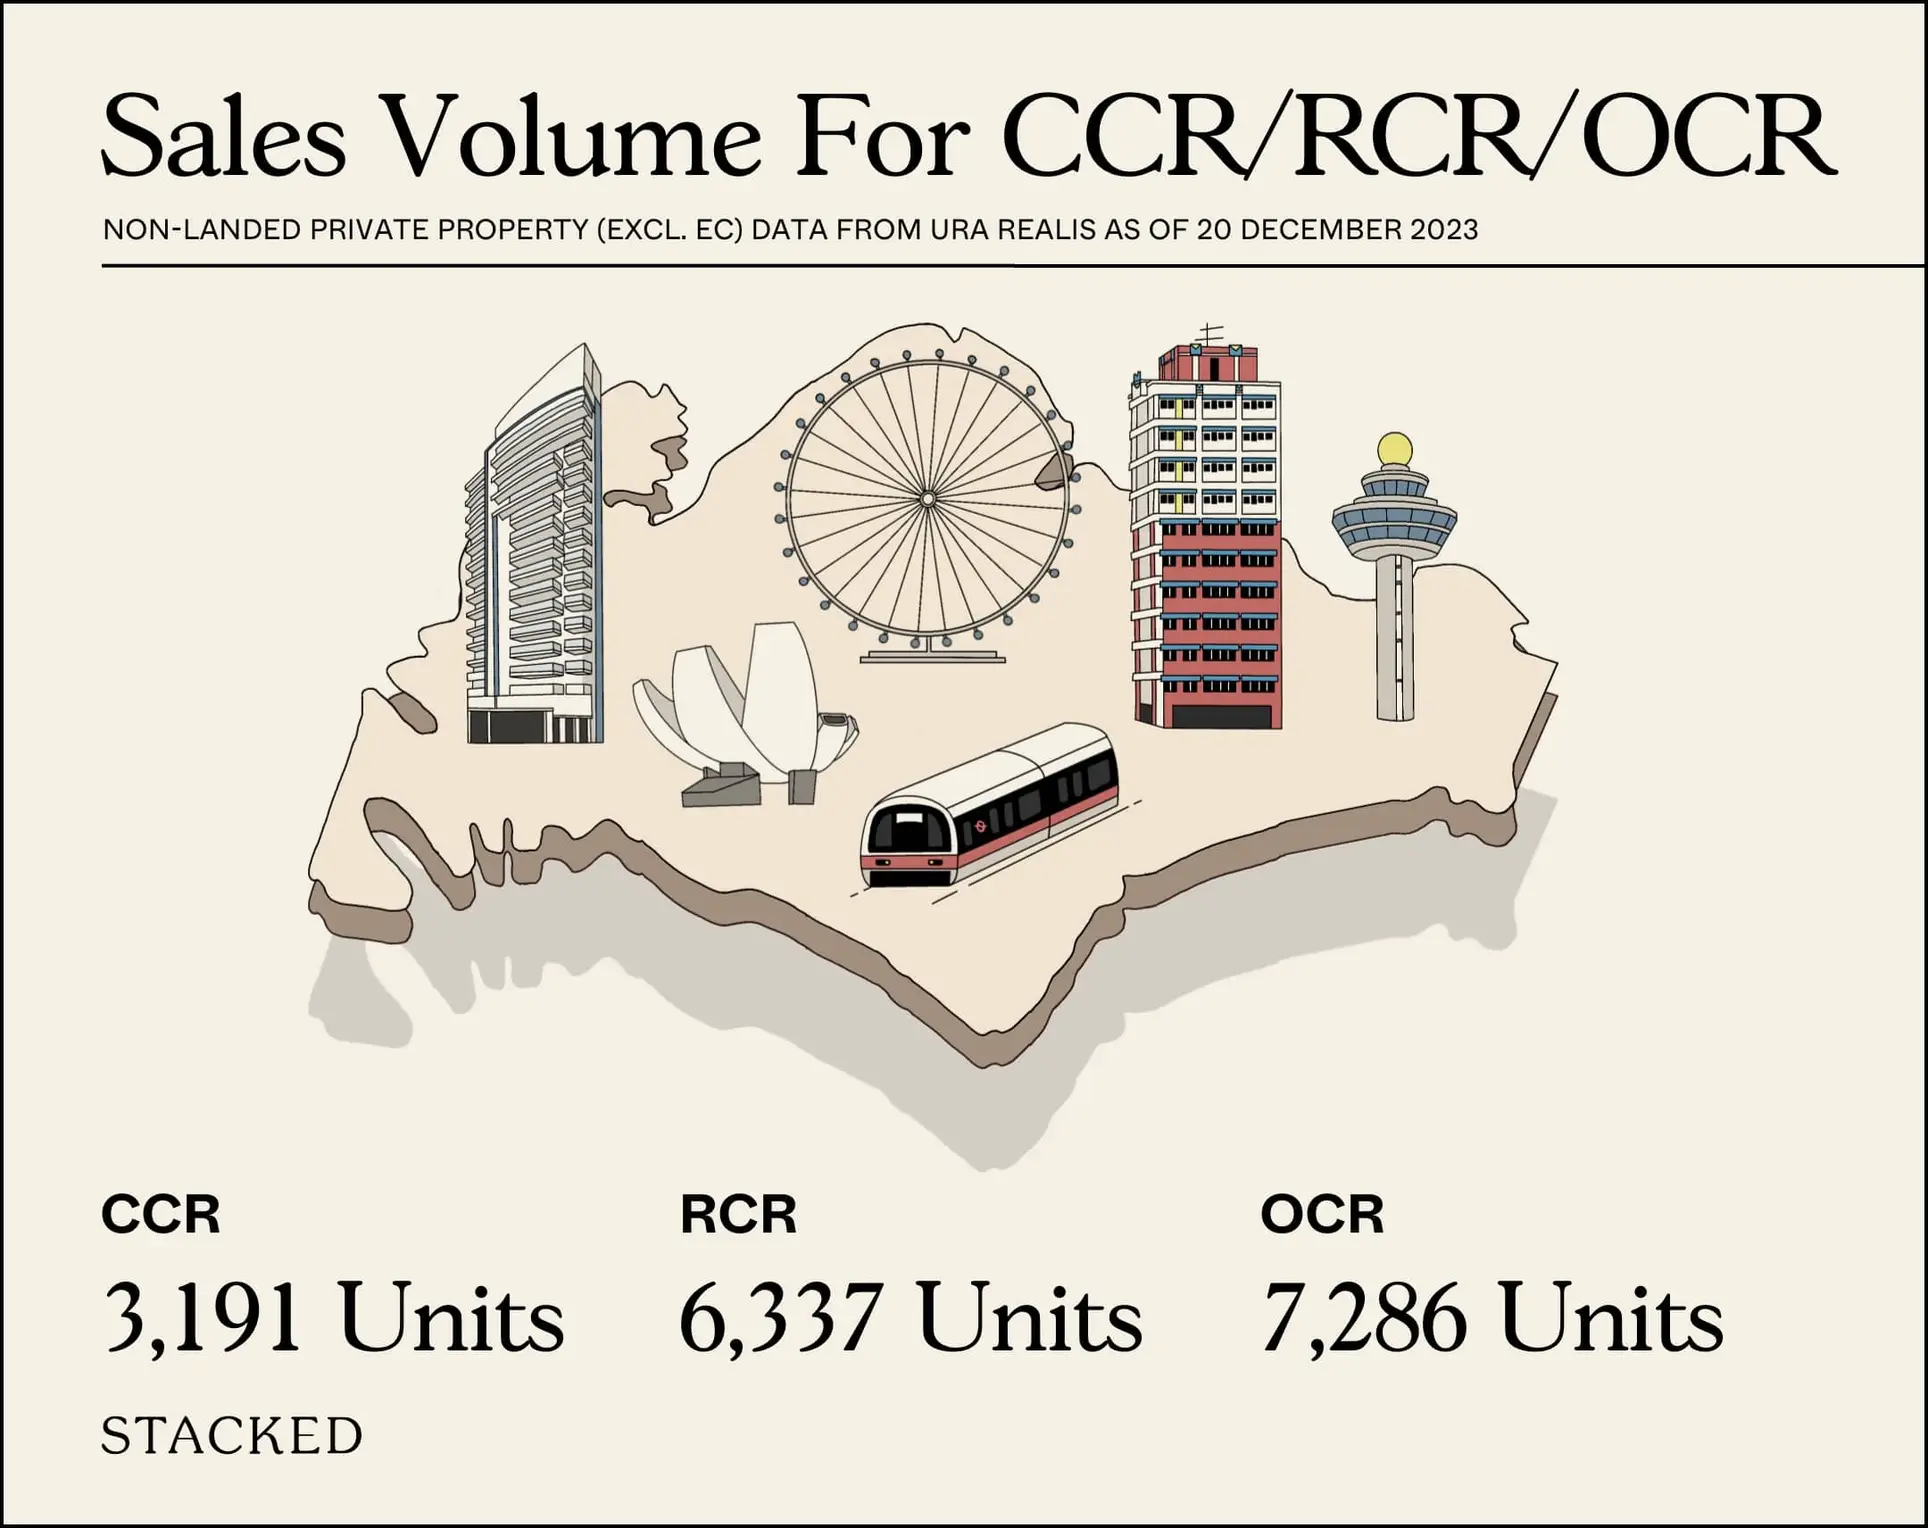 Sales Volume For CCR RCR OCR 2023